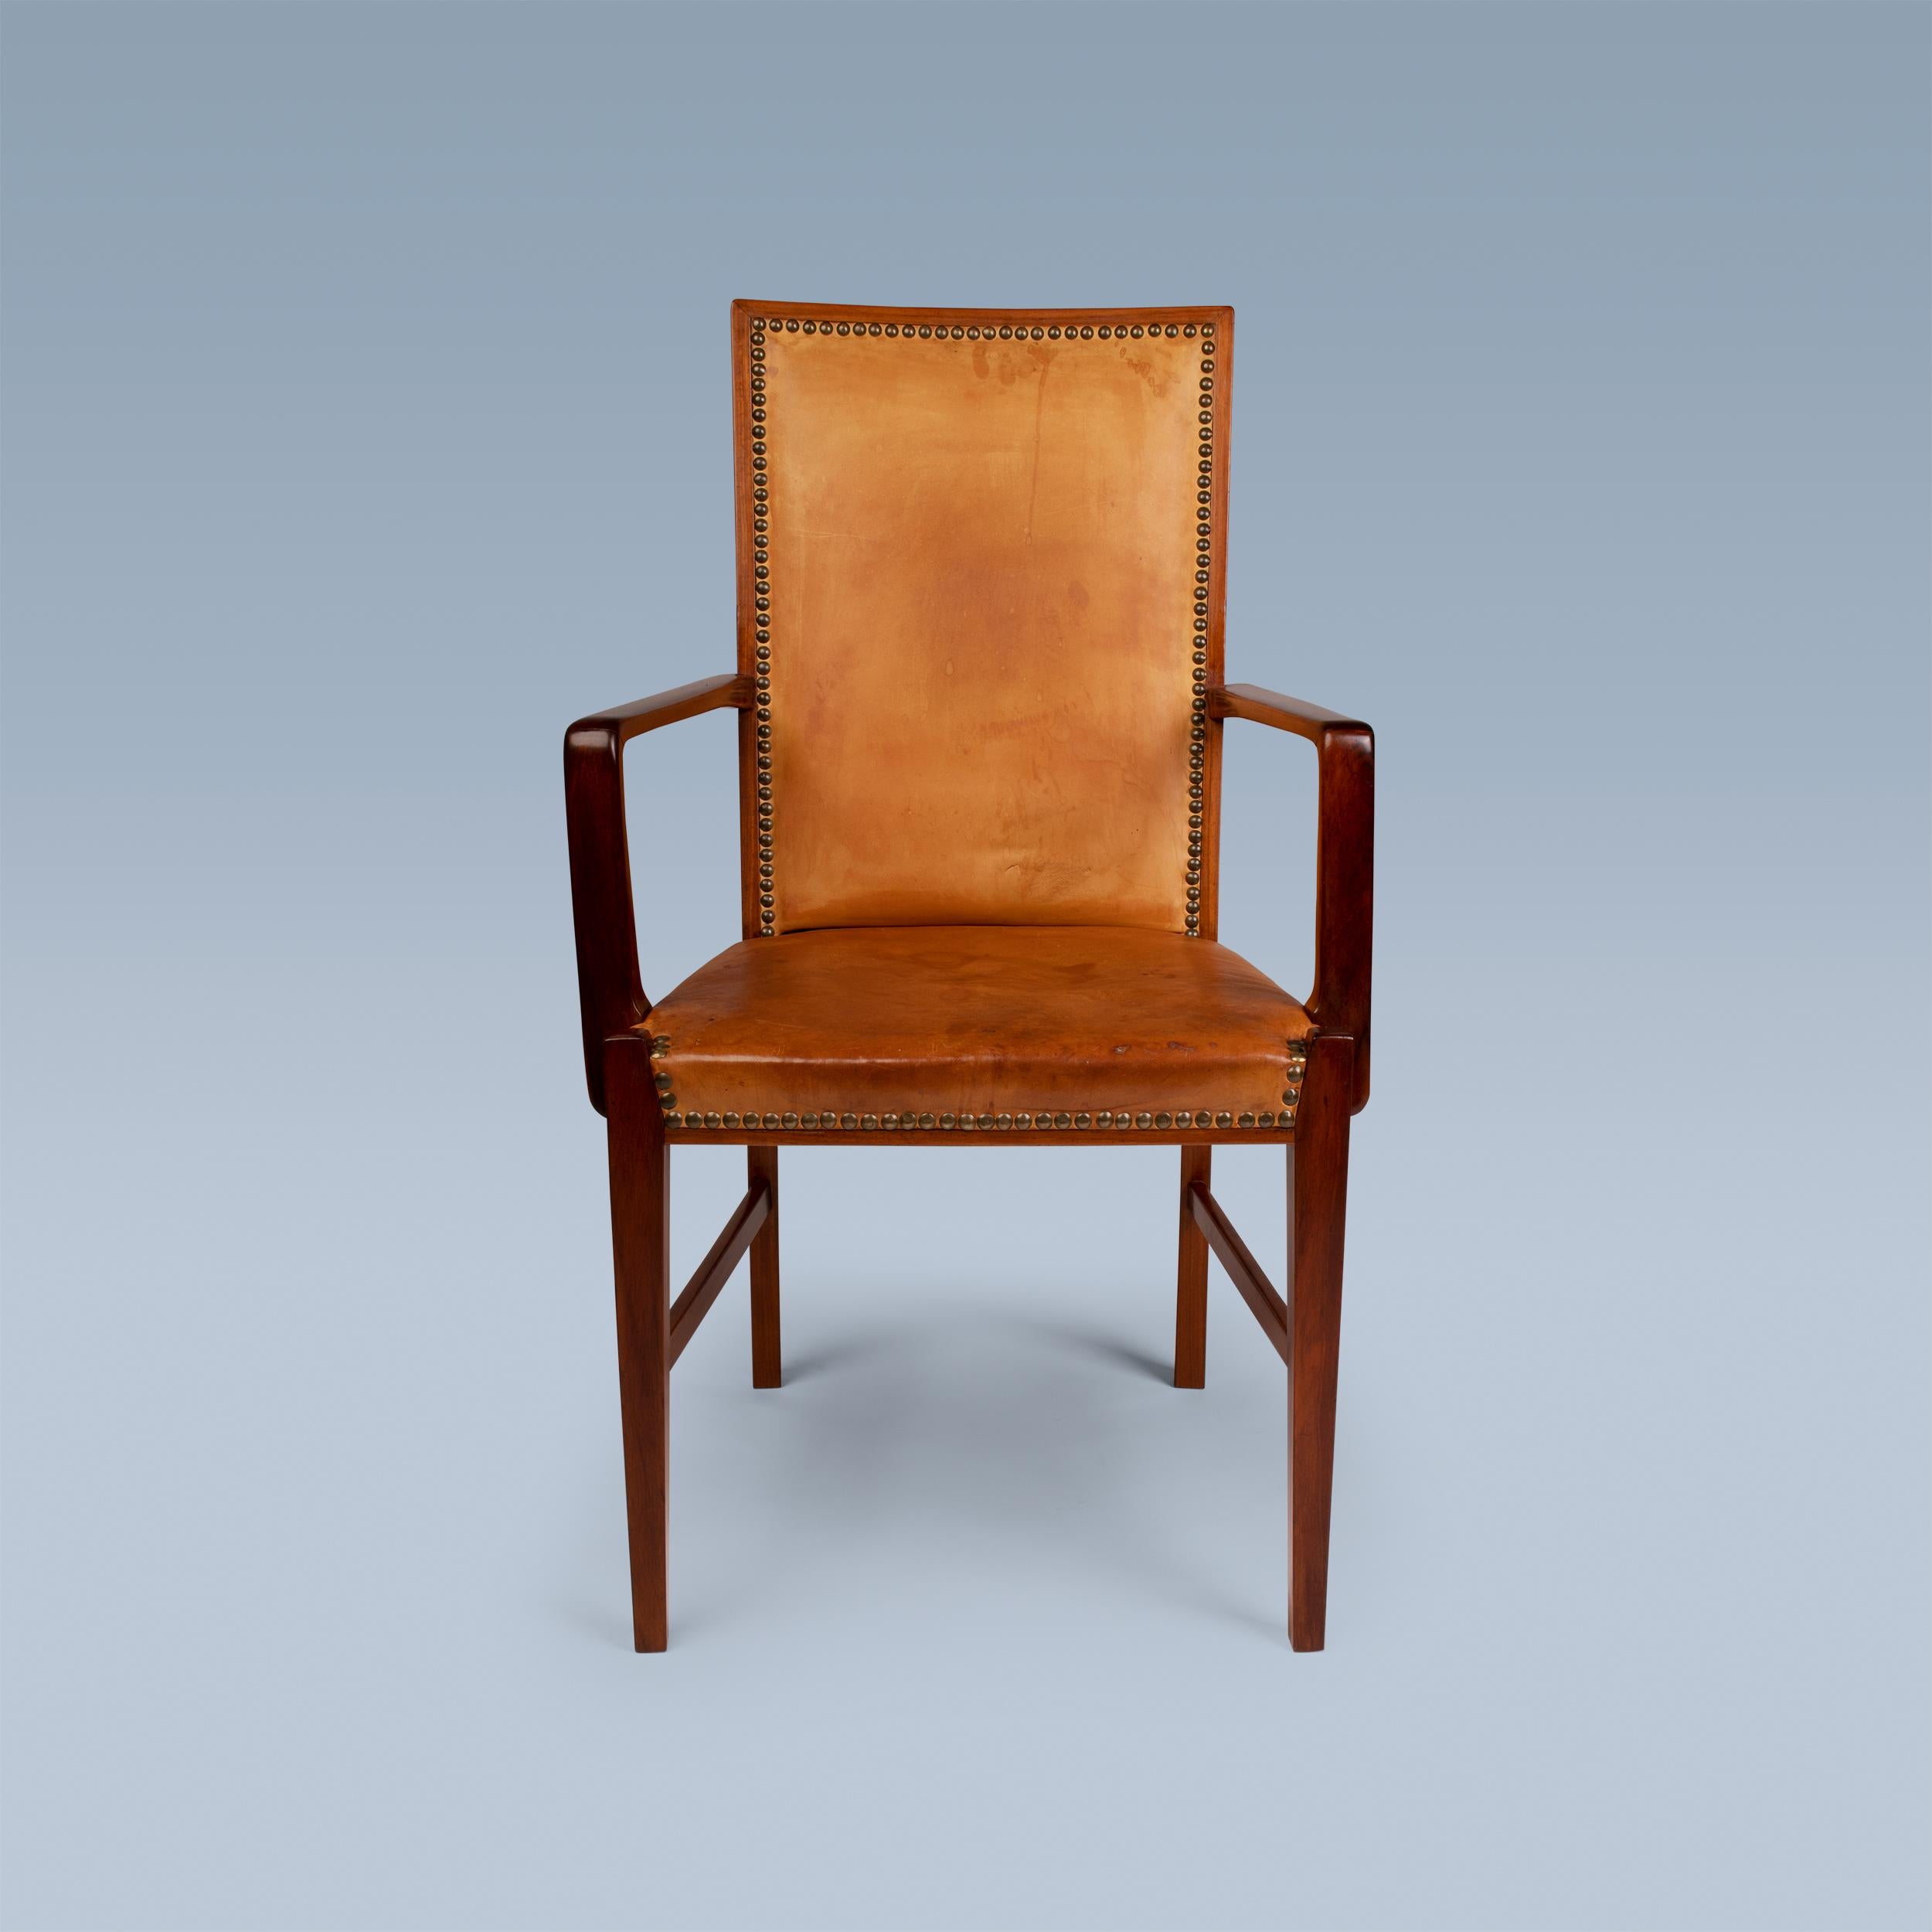 Dieser Hochlehner-Sessel eines dänischen Tischlers hat ein Gestell aus Nussholz.
Er ist mit patiniertem Leder gepolstert und mit Messingnägeln versehen.
Idealer Schreibtischstuhl oder Stuhl für den Kopf des Tisches.